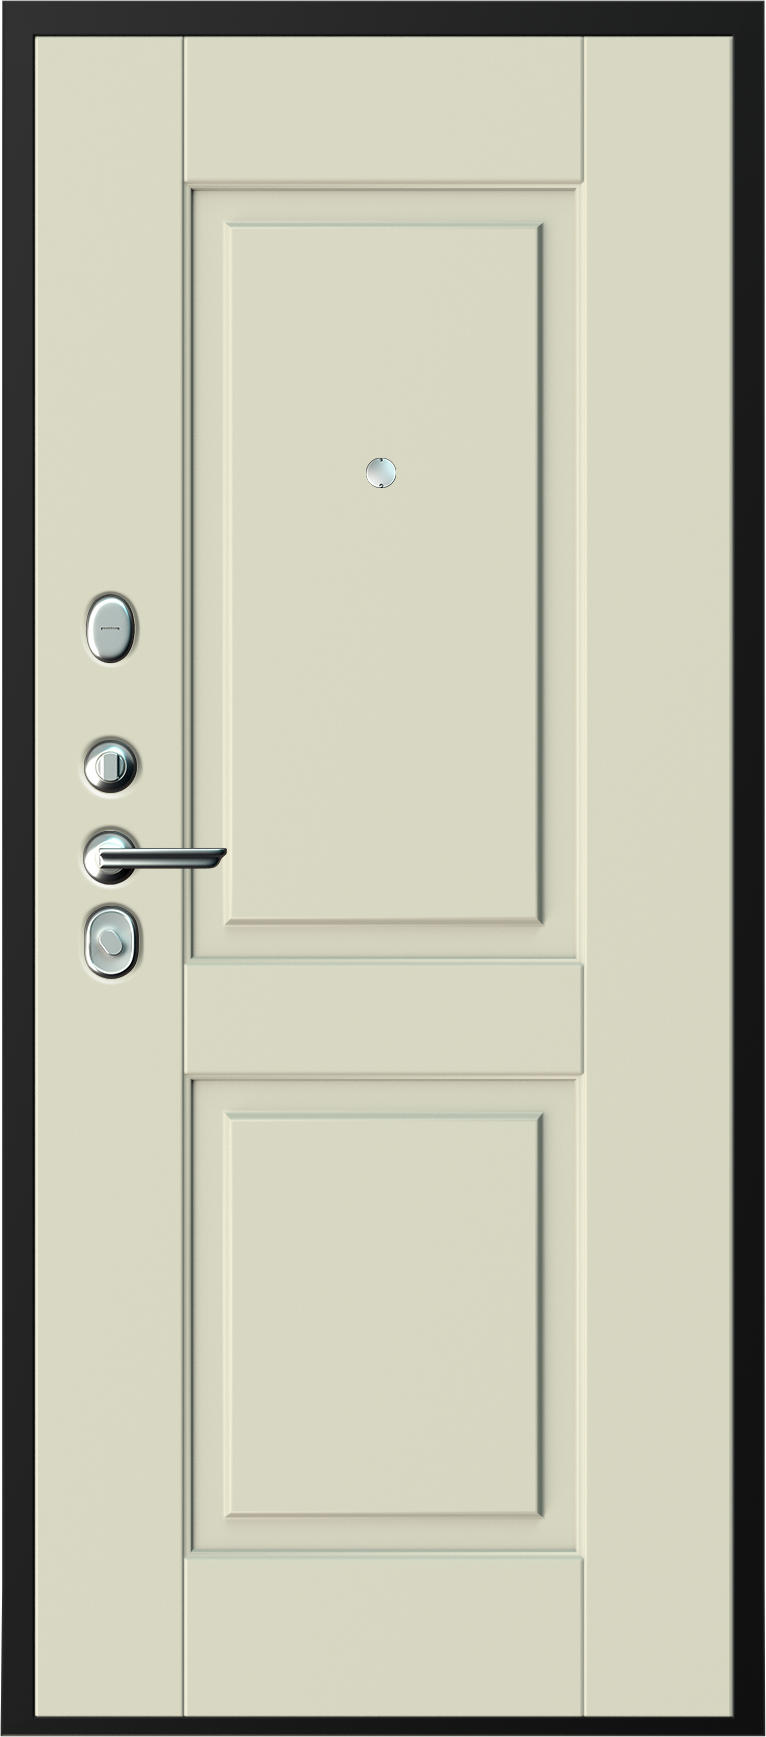 Карда Входная дверь С-12422, арт. 0007021 - фото №1